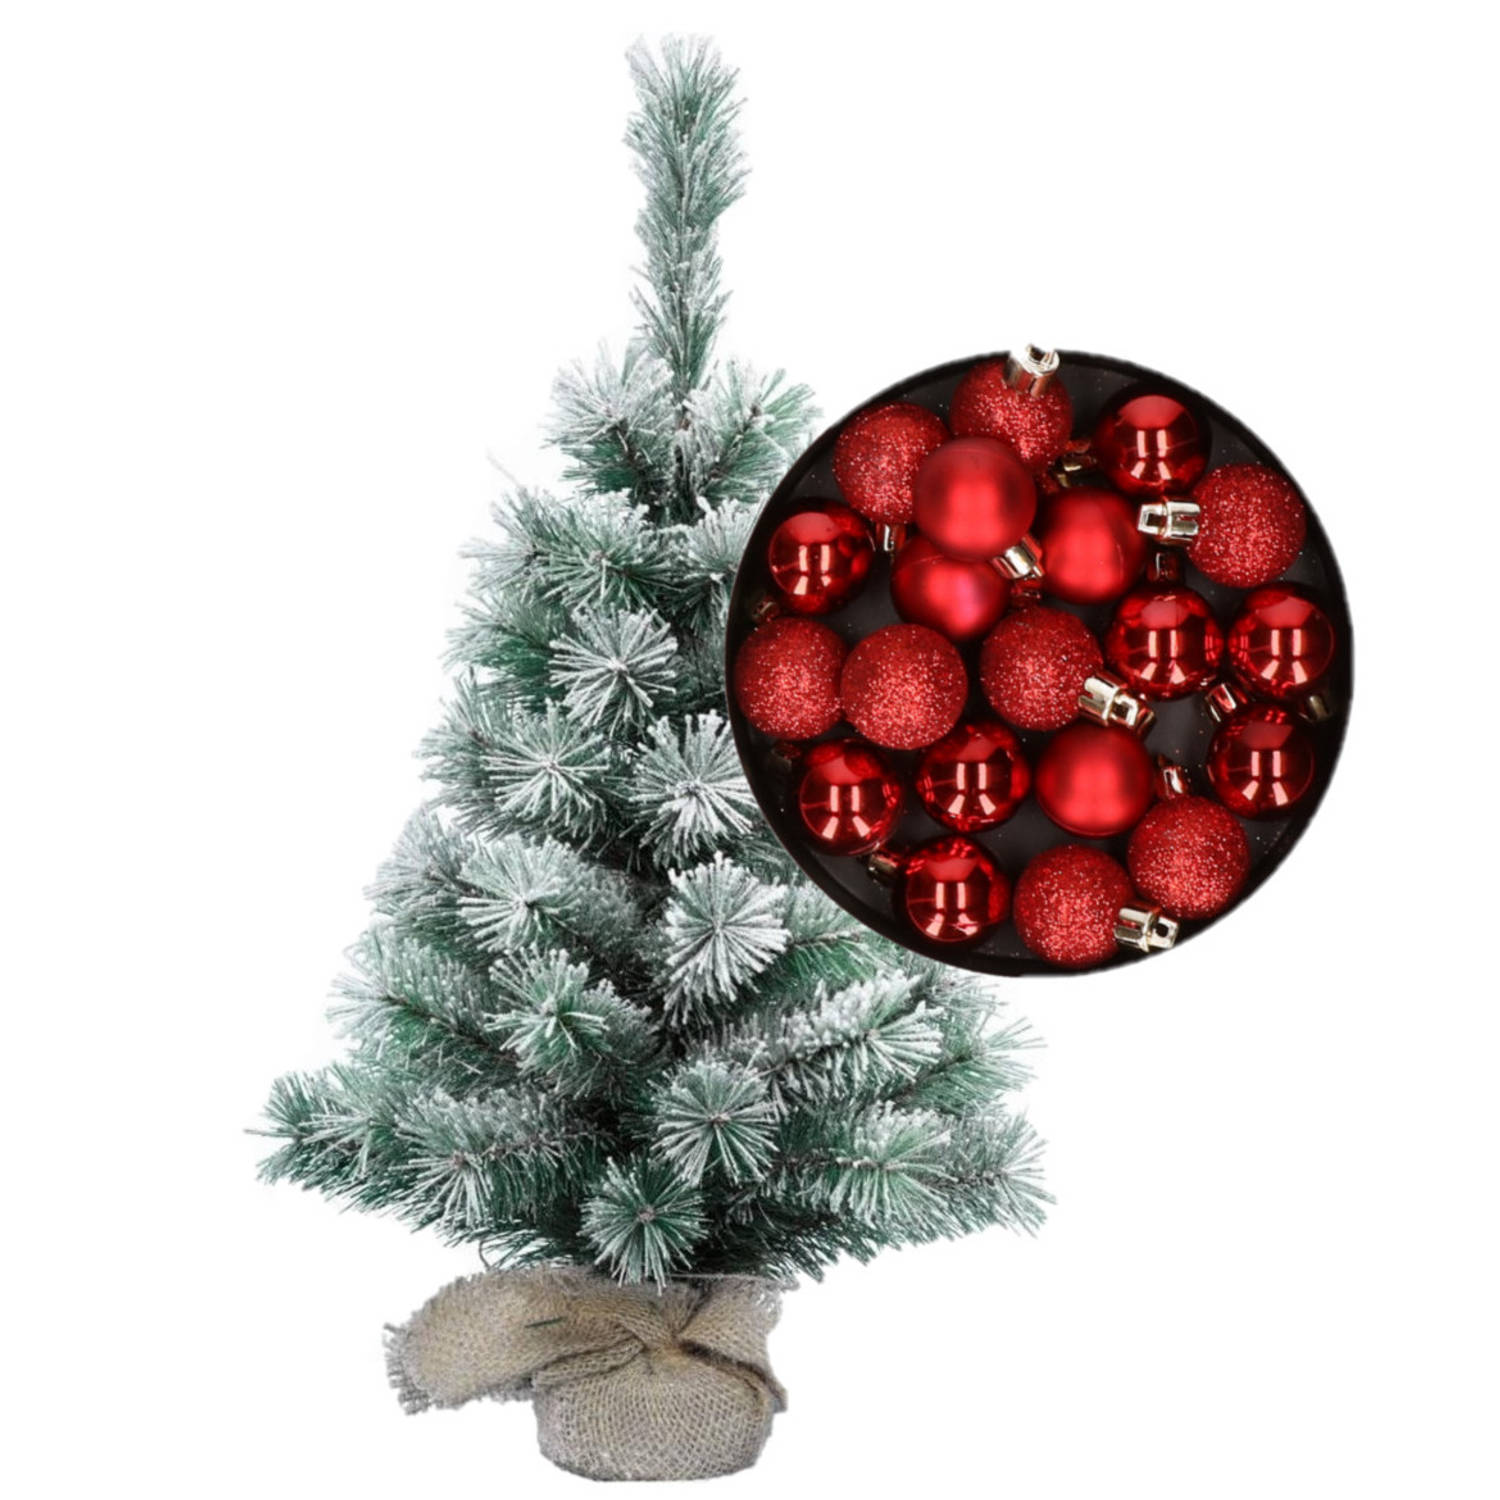 Besneeuwde mini kerstboom-kunst kerstboom 35 cm met kerstballen rood Kunstkerstboom